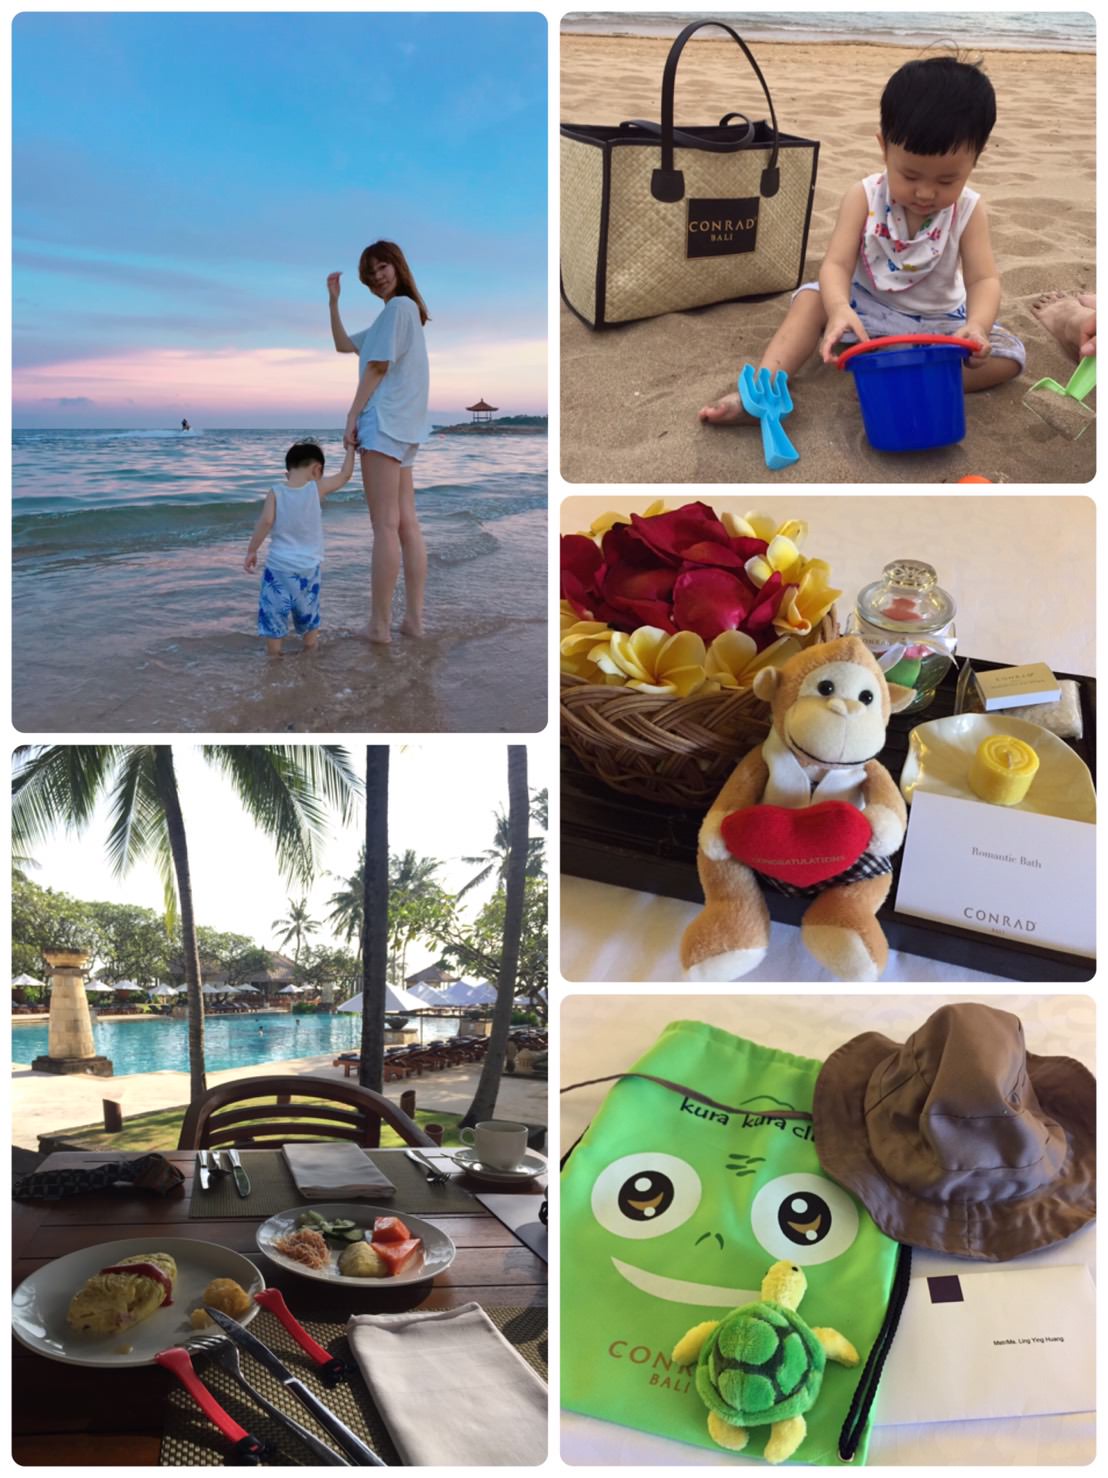 『2017峇里島親子度假之旅』♥就從港麗飯店(Conrad Bali Resort & Spa)開始♥分享寶寶出國相關小心得(≧∇≦)/